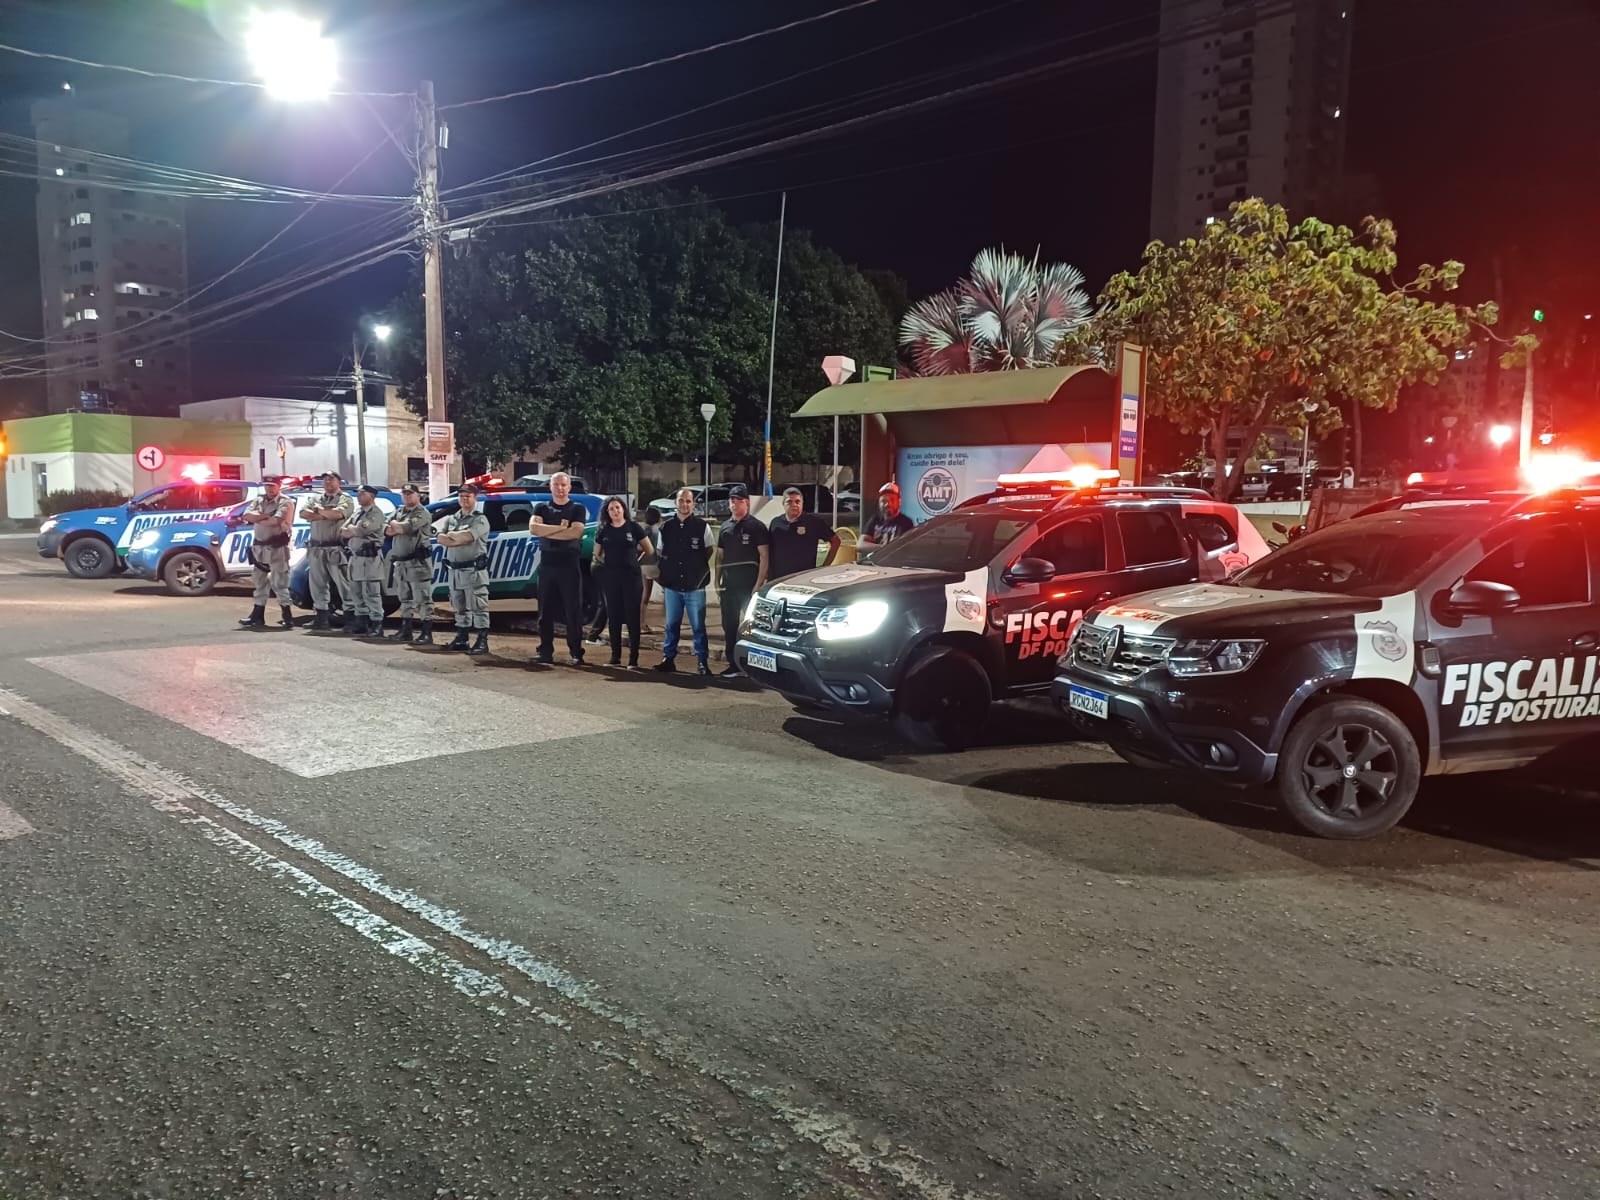 Fim de semana complicado em Rio Verde, policiais atendem diversos chamados de perturbação do sossego   